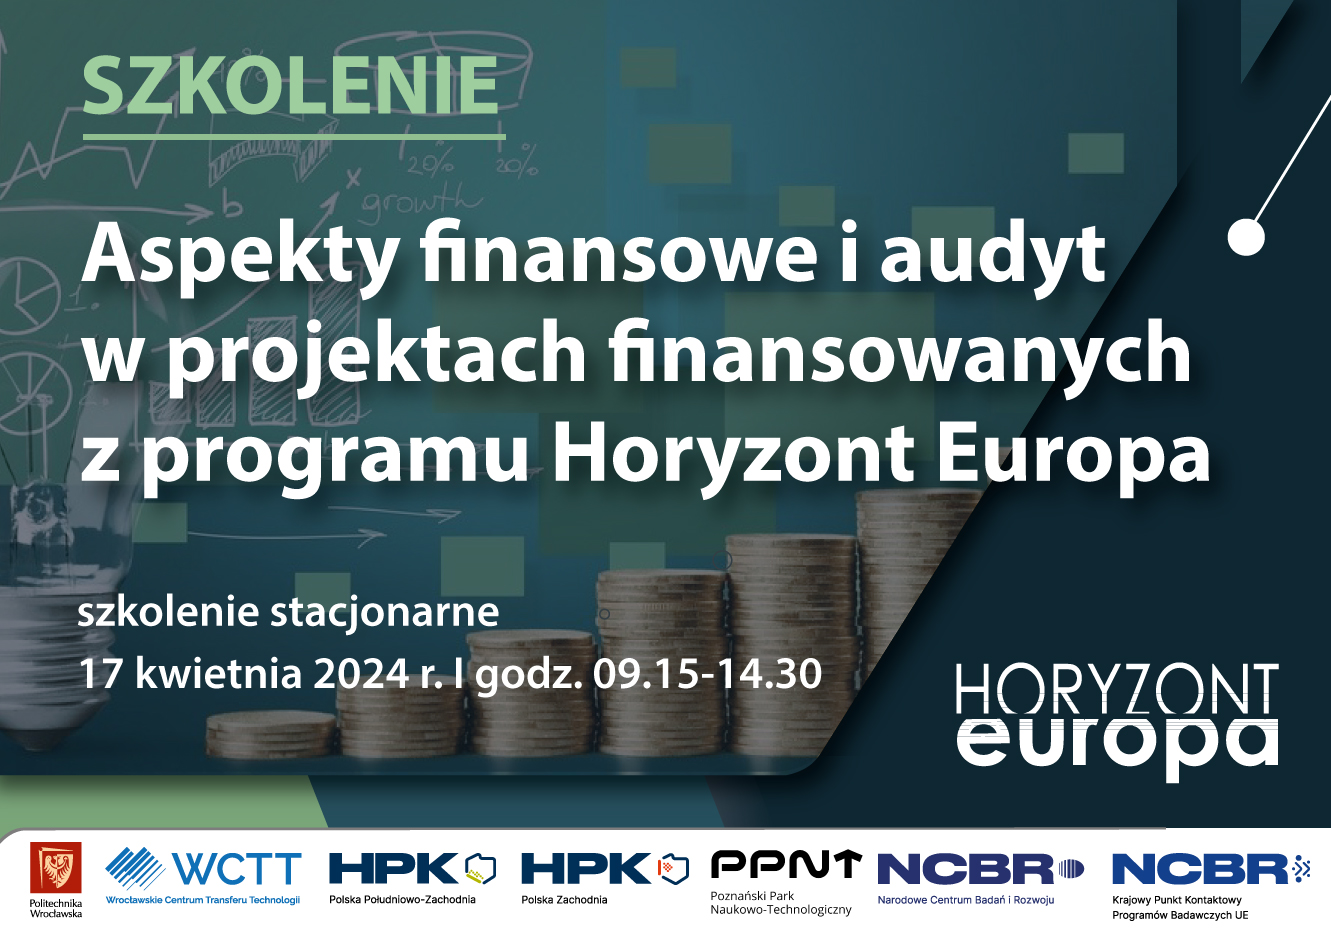 Szkolenie stacjonarne pt. „Aspekty finansowe i audyt w projektach finansowanych z programu Horyzont Europa”